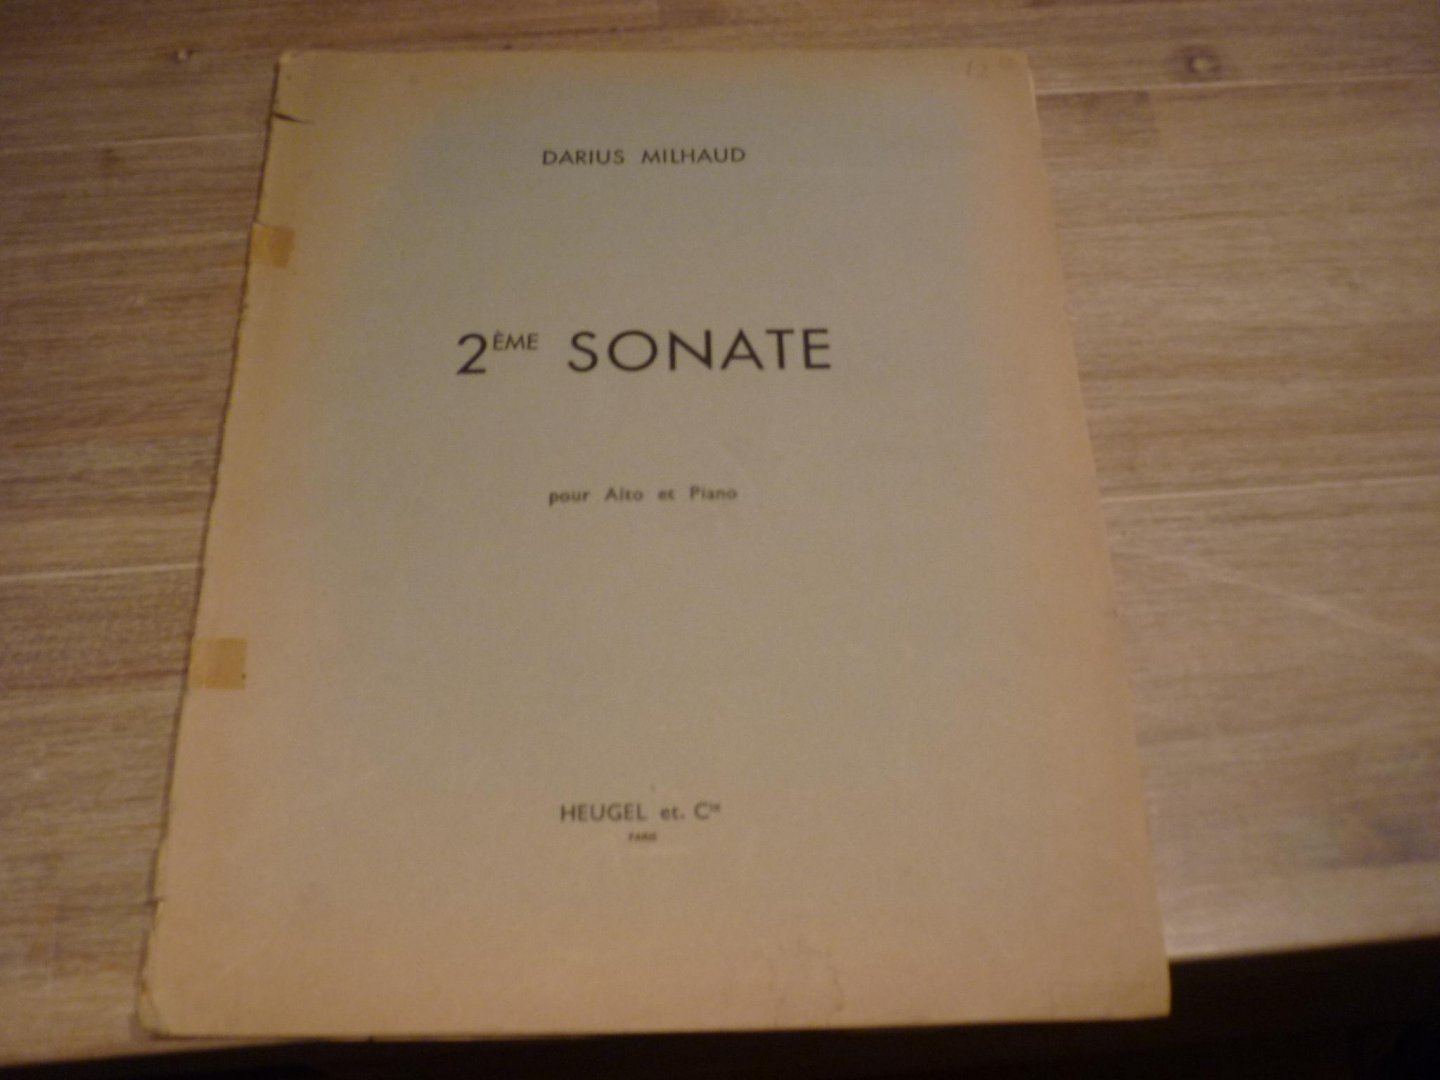 Milhaud; Darius (1892–1974) - Sonate Nr. 2 - Alto Et Piano